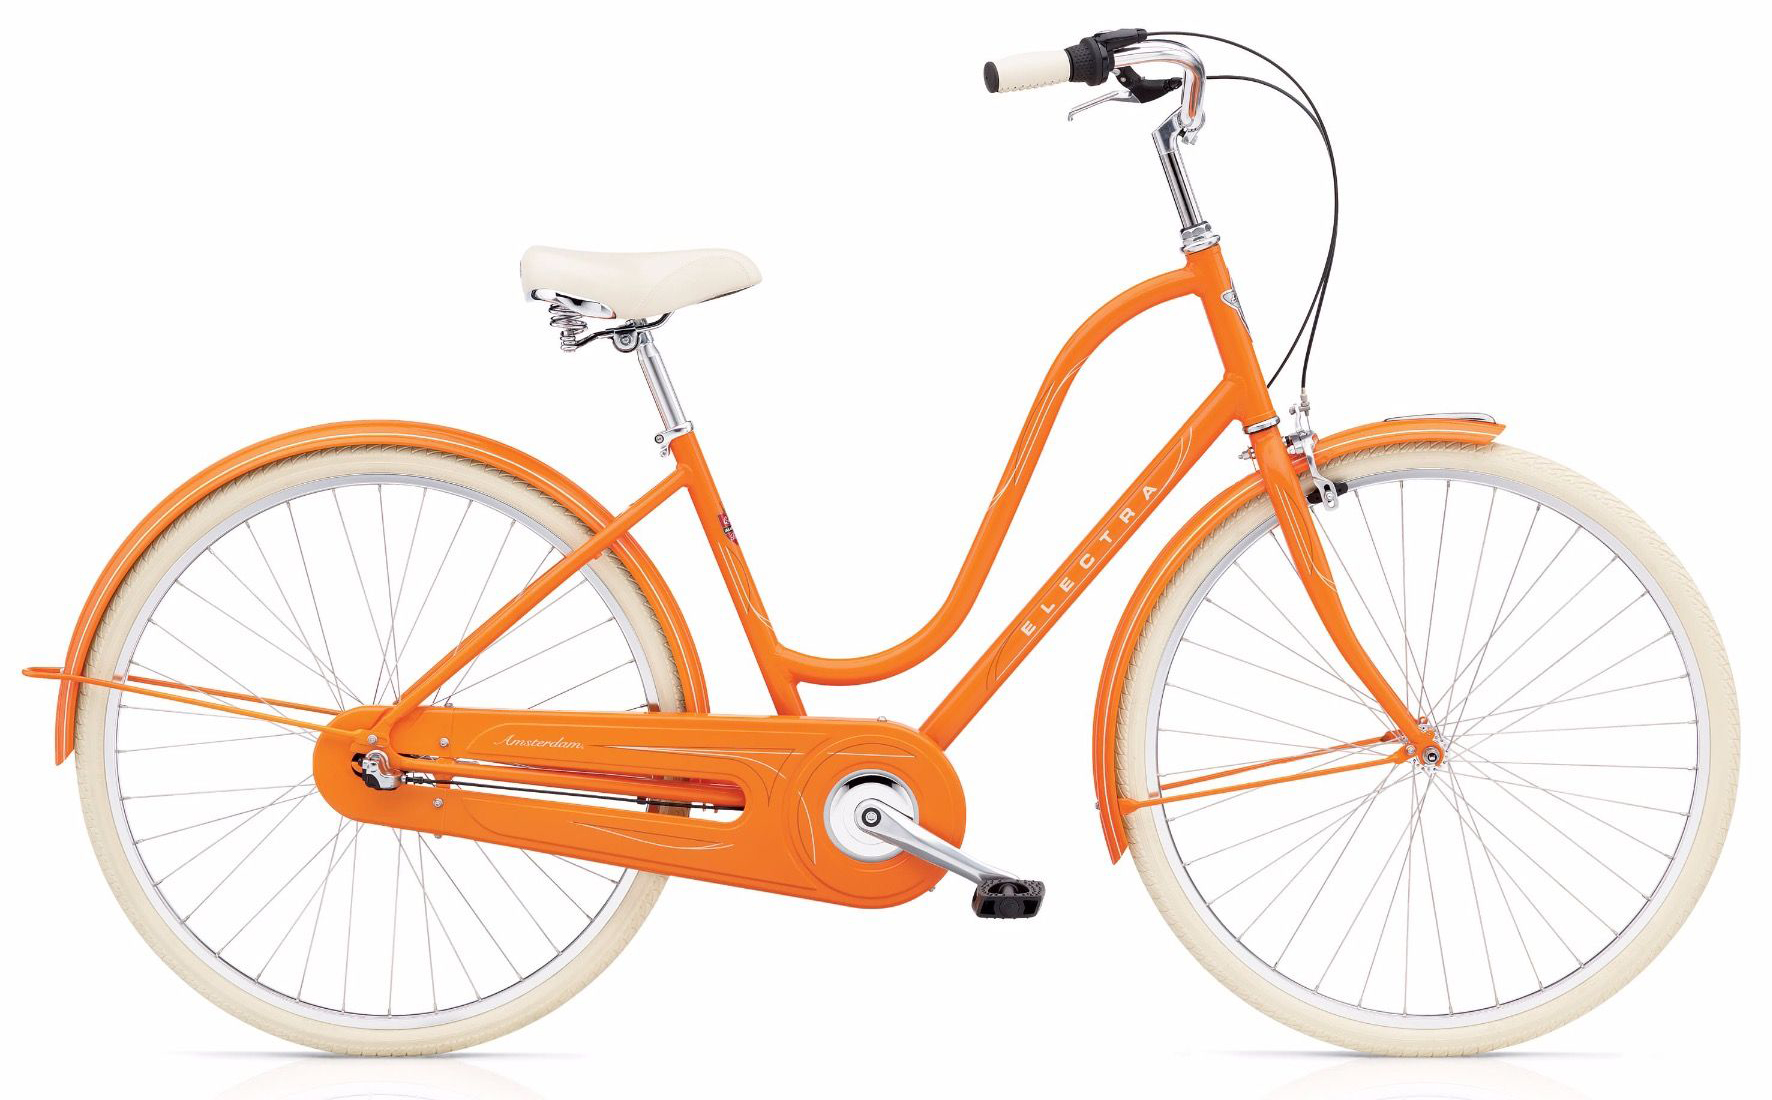  Отзывы о Женском велосипеде Electra Amsterdam Original 3i ladies 2019